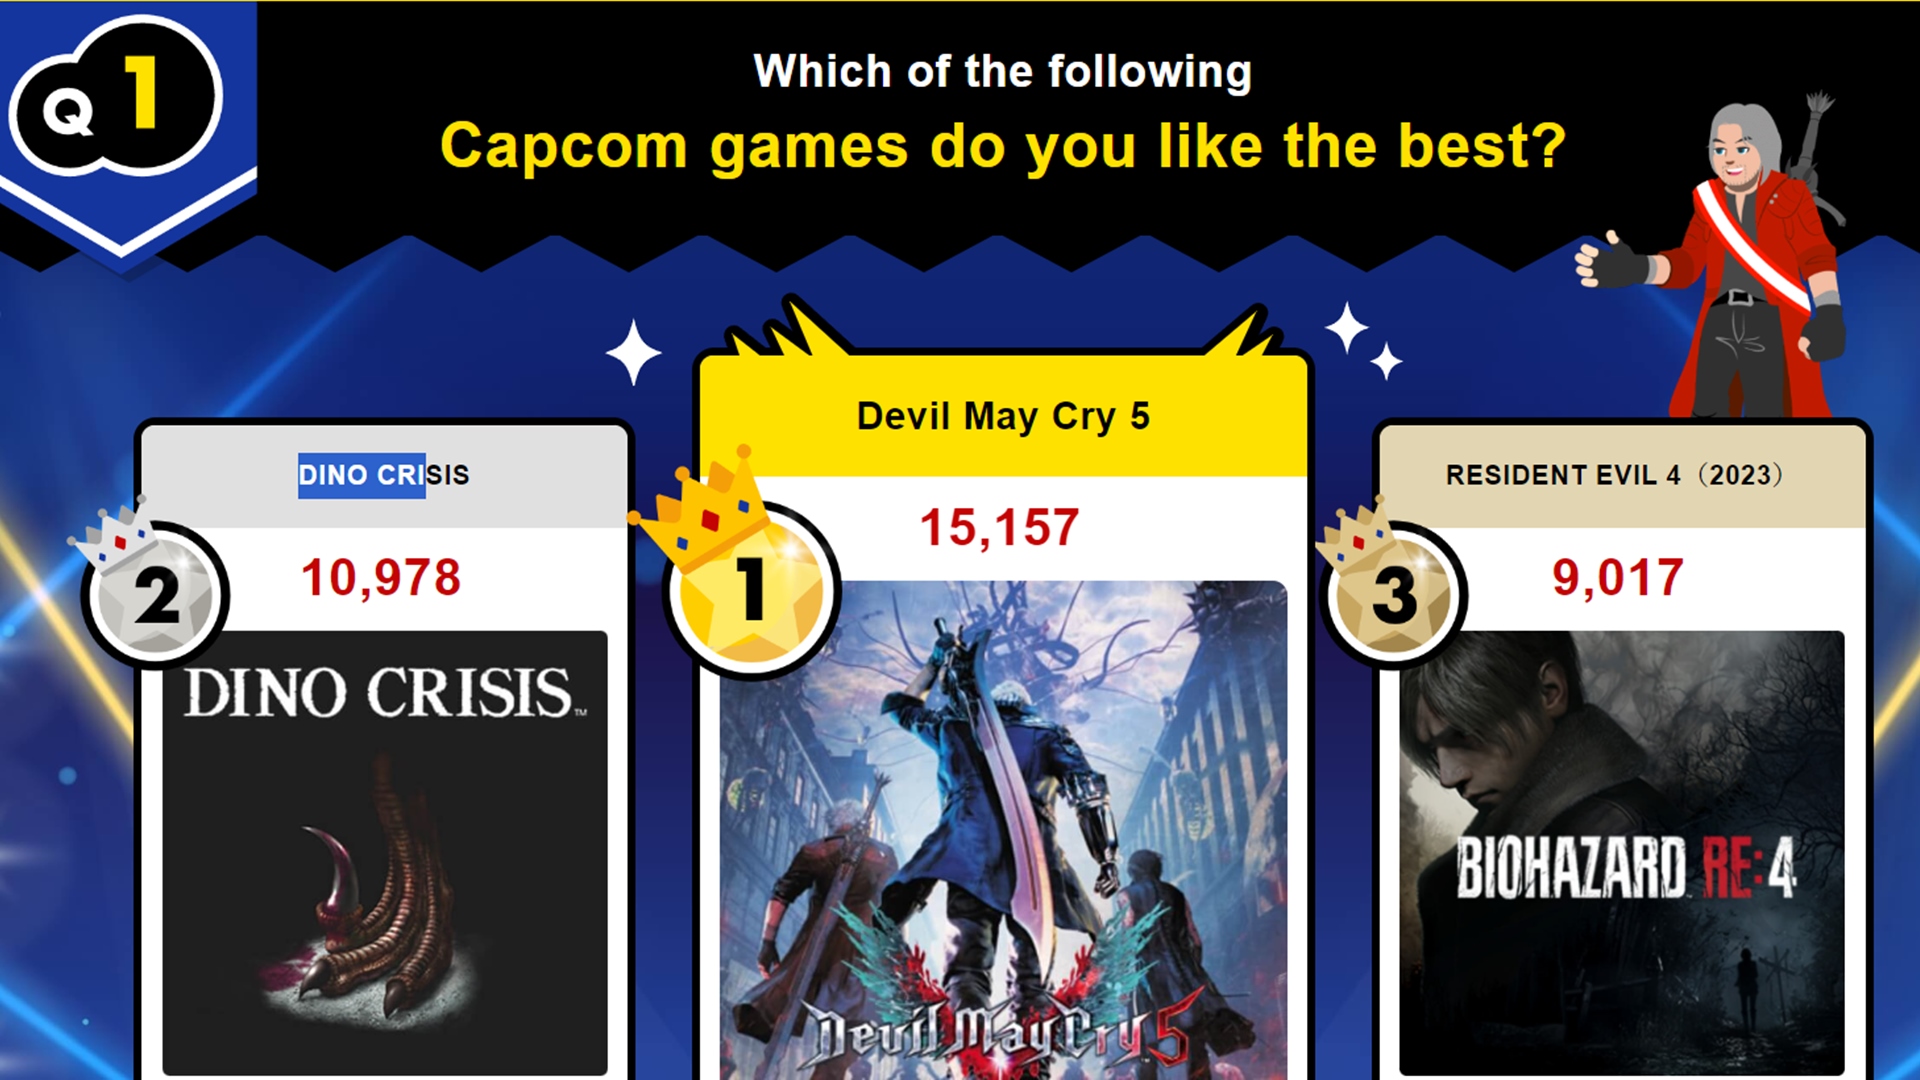 O primeiro Dino Crisis ocupa o segundo lugar na lista dos melhores jogos individuais da Capcom, segundo as preferências dos fãs.